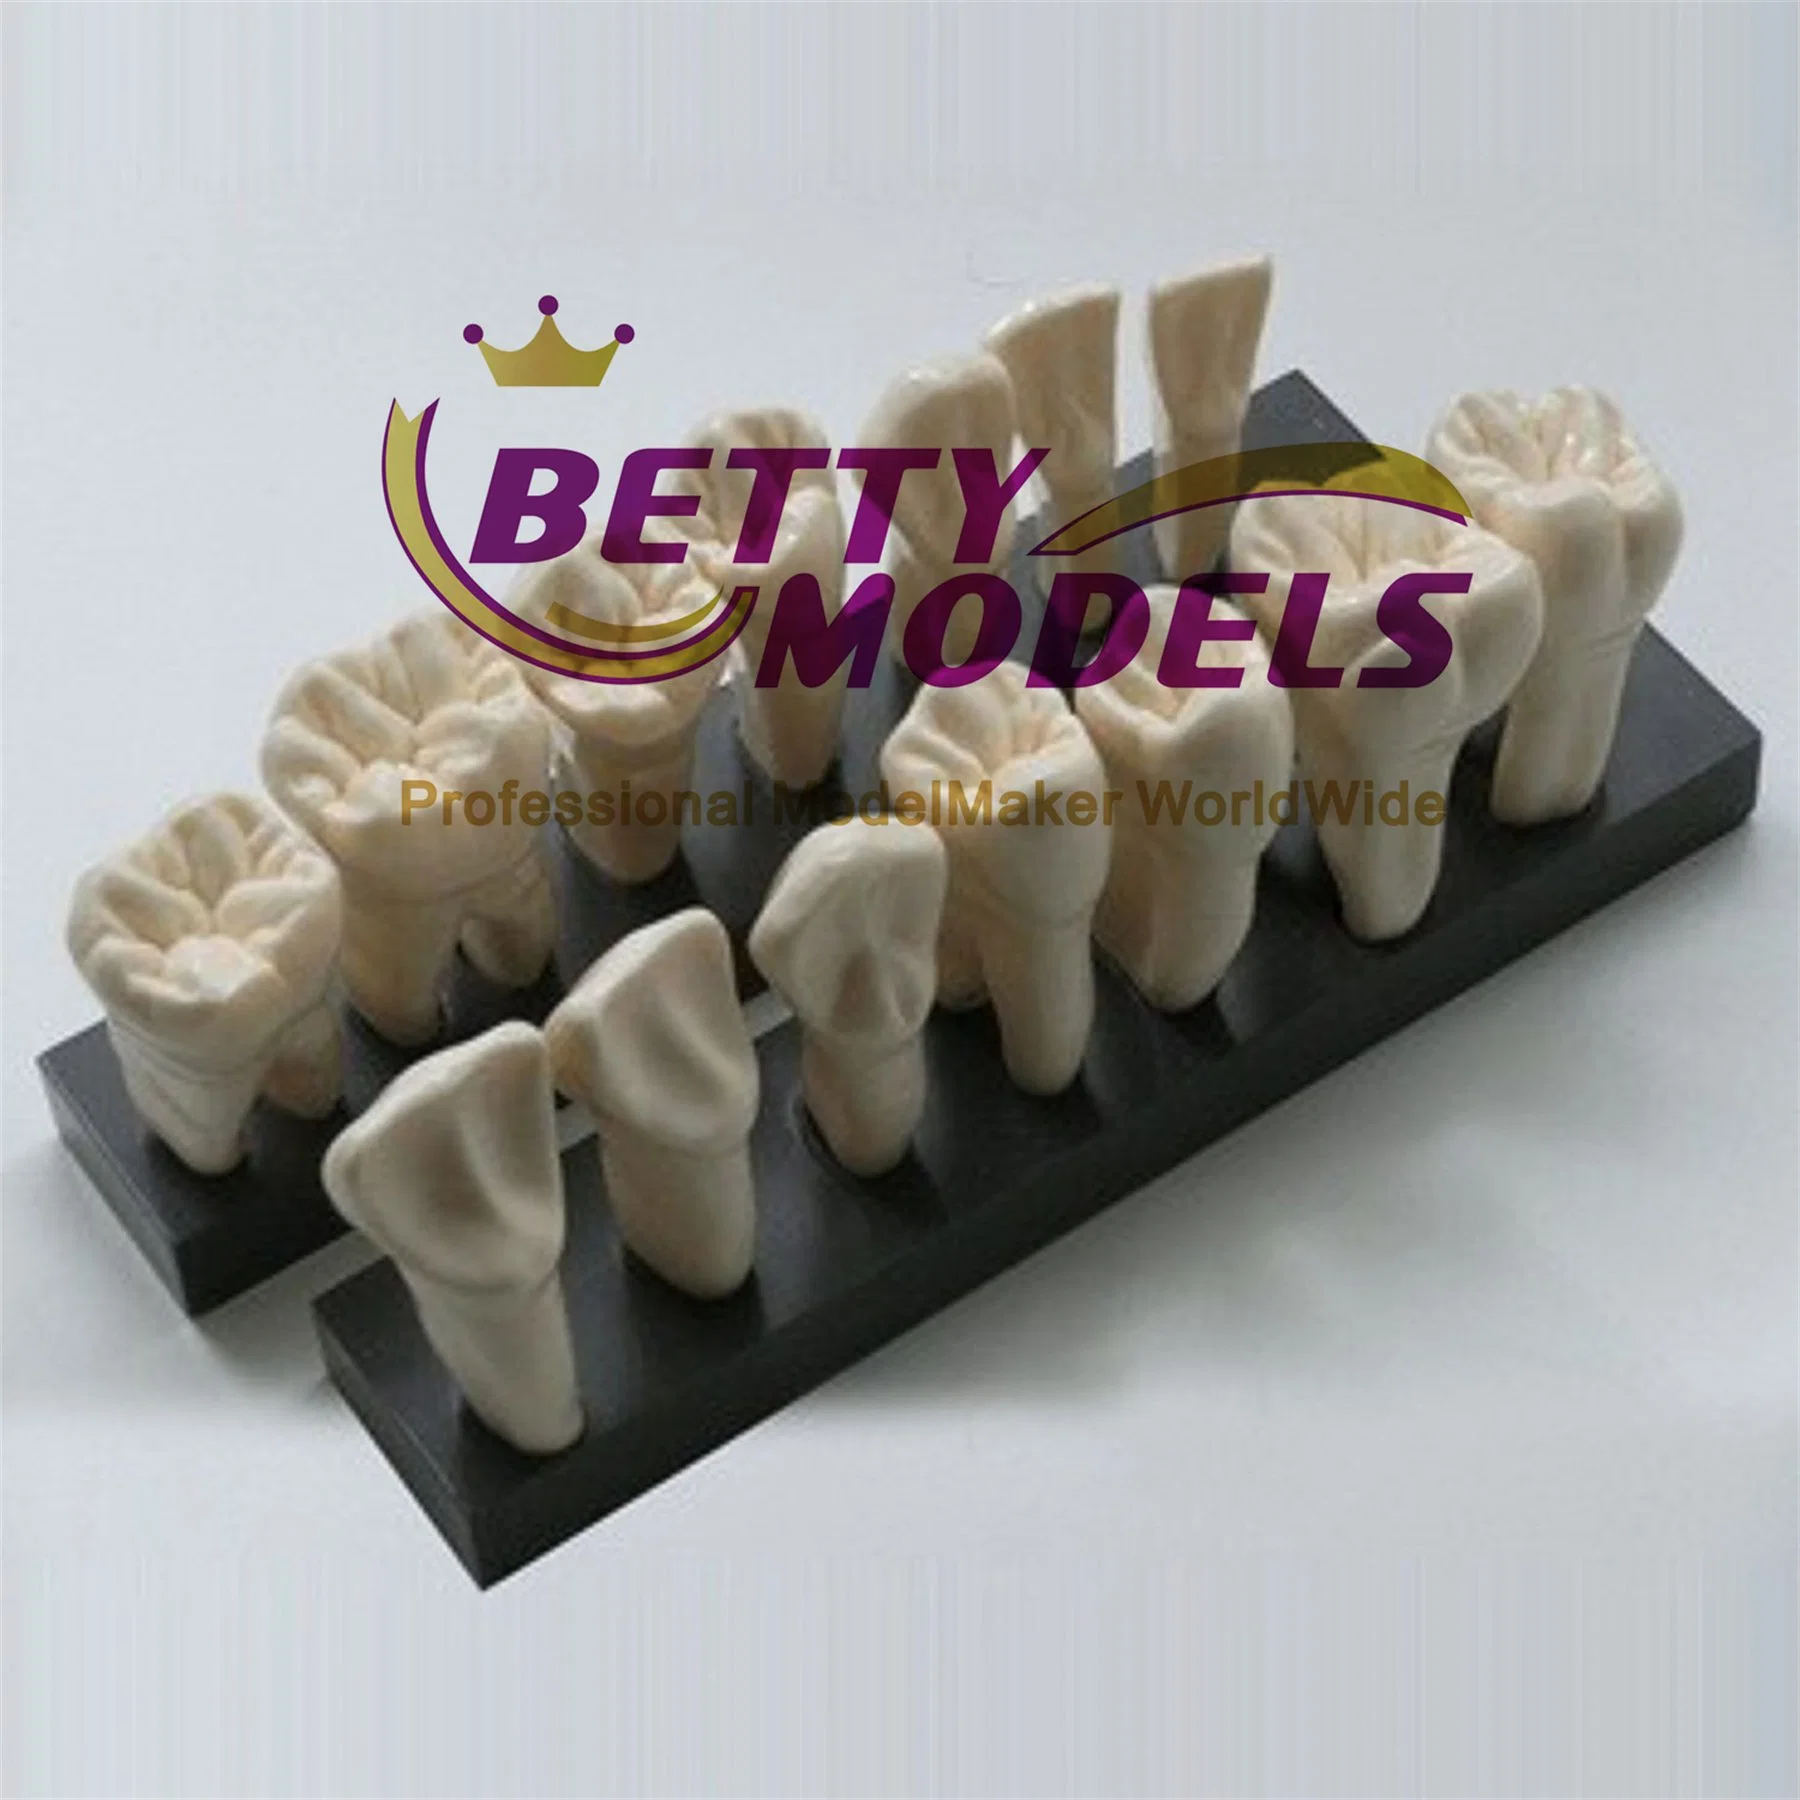 Détails de l'échelle haute dents médical modèle physique 3D pour l'enseignement